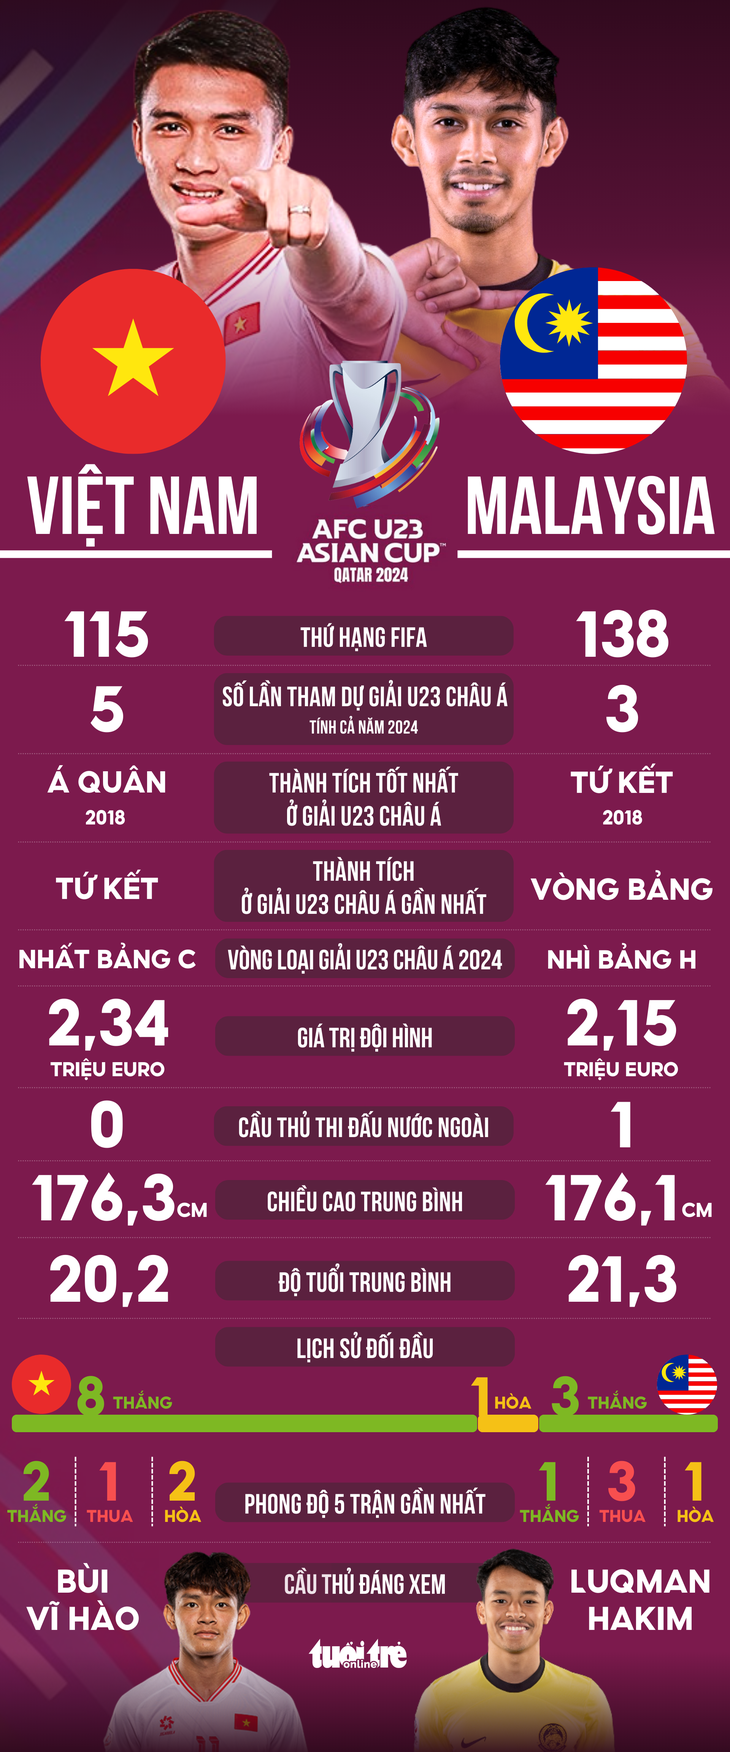 Tương quan sức mạnh giữa U23 Việt Nam và Malaysia